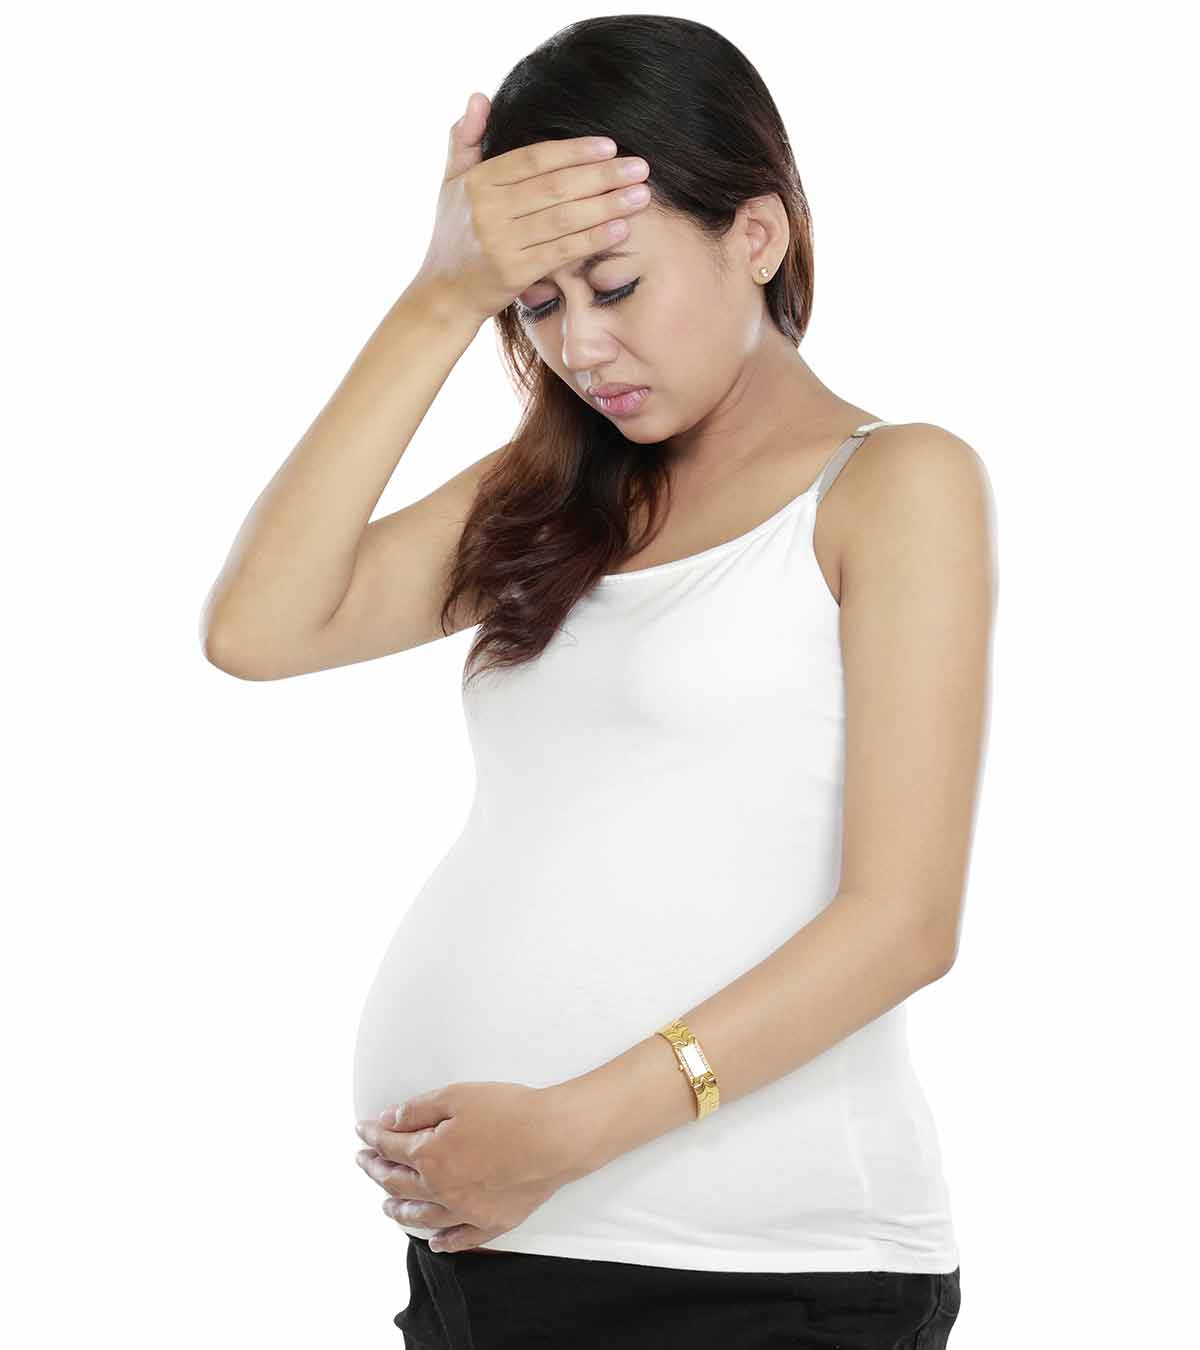 大肠杆菌感染会影响怀孕吗?